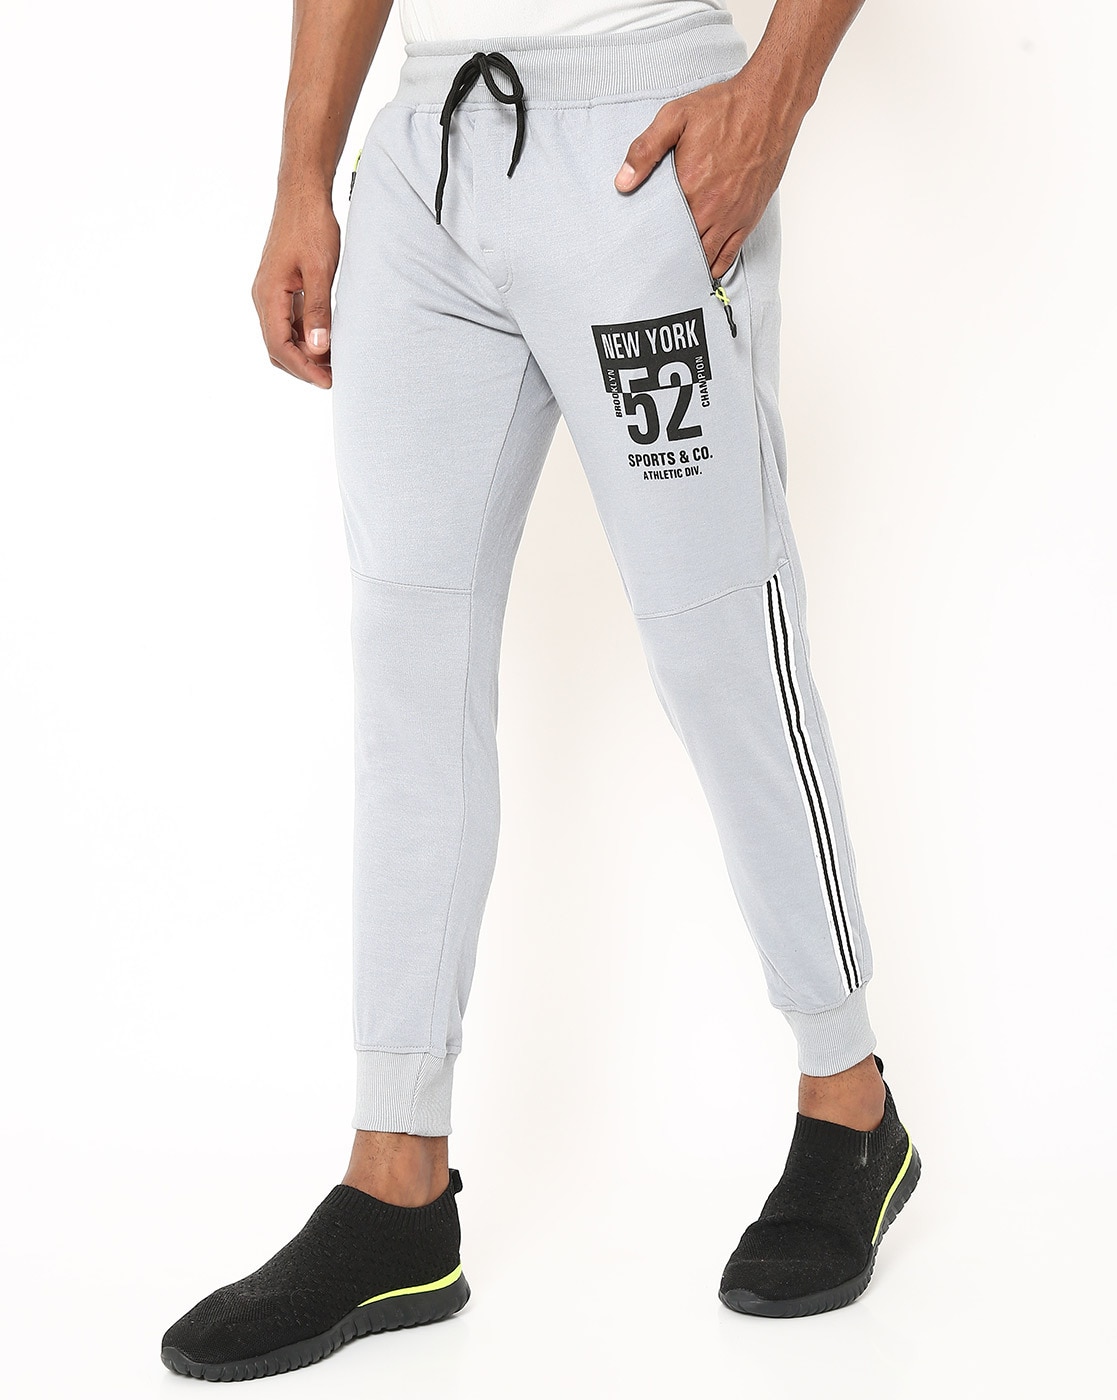 Buy Blue Cotton Track Pants For Men Online: TT Bazaar